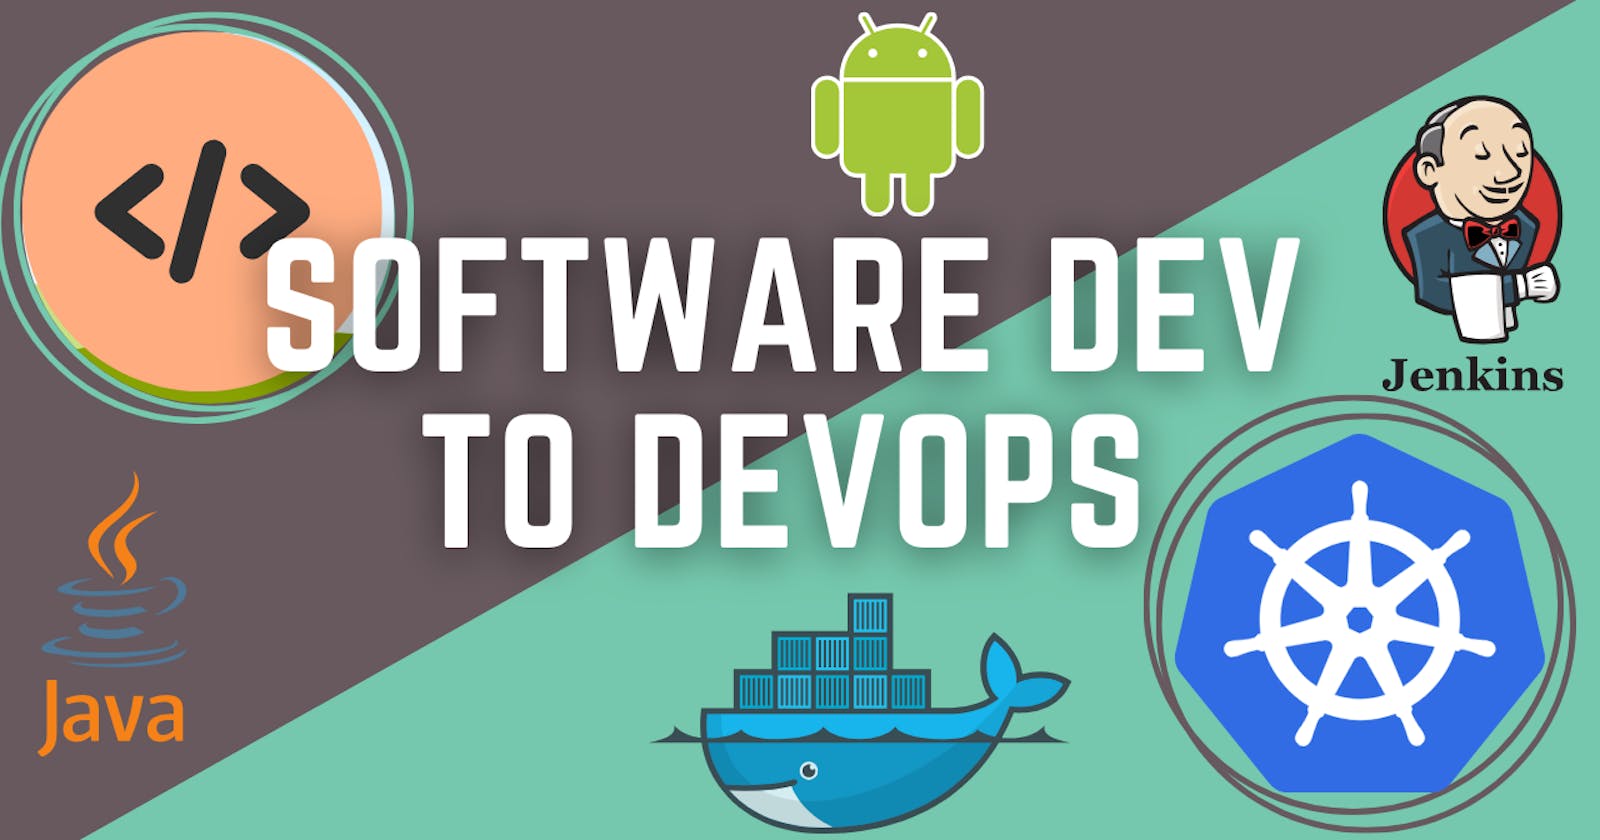 From Software devloper to DevOps